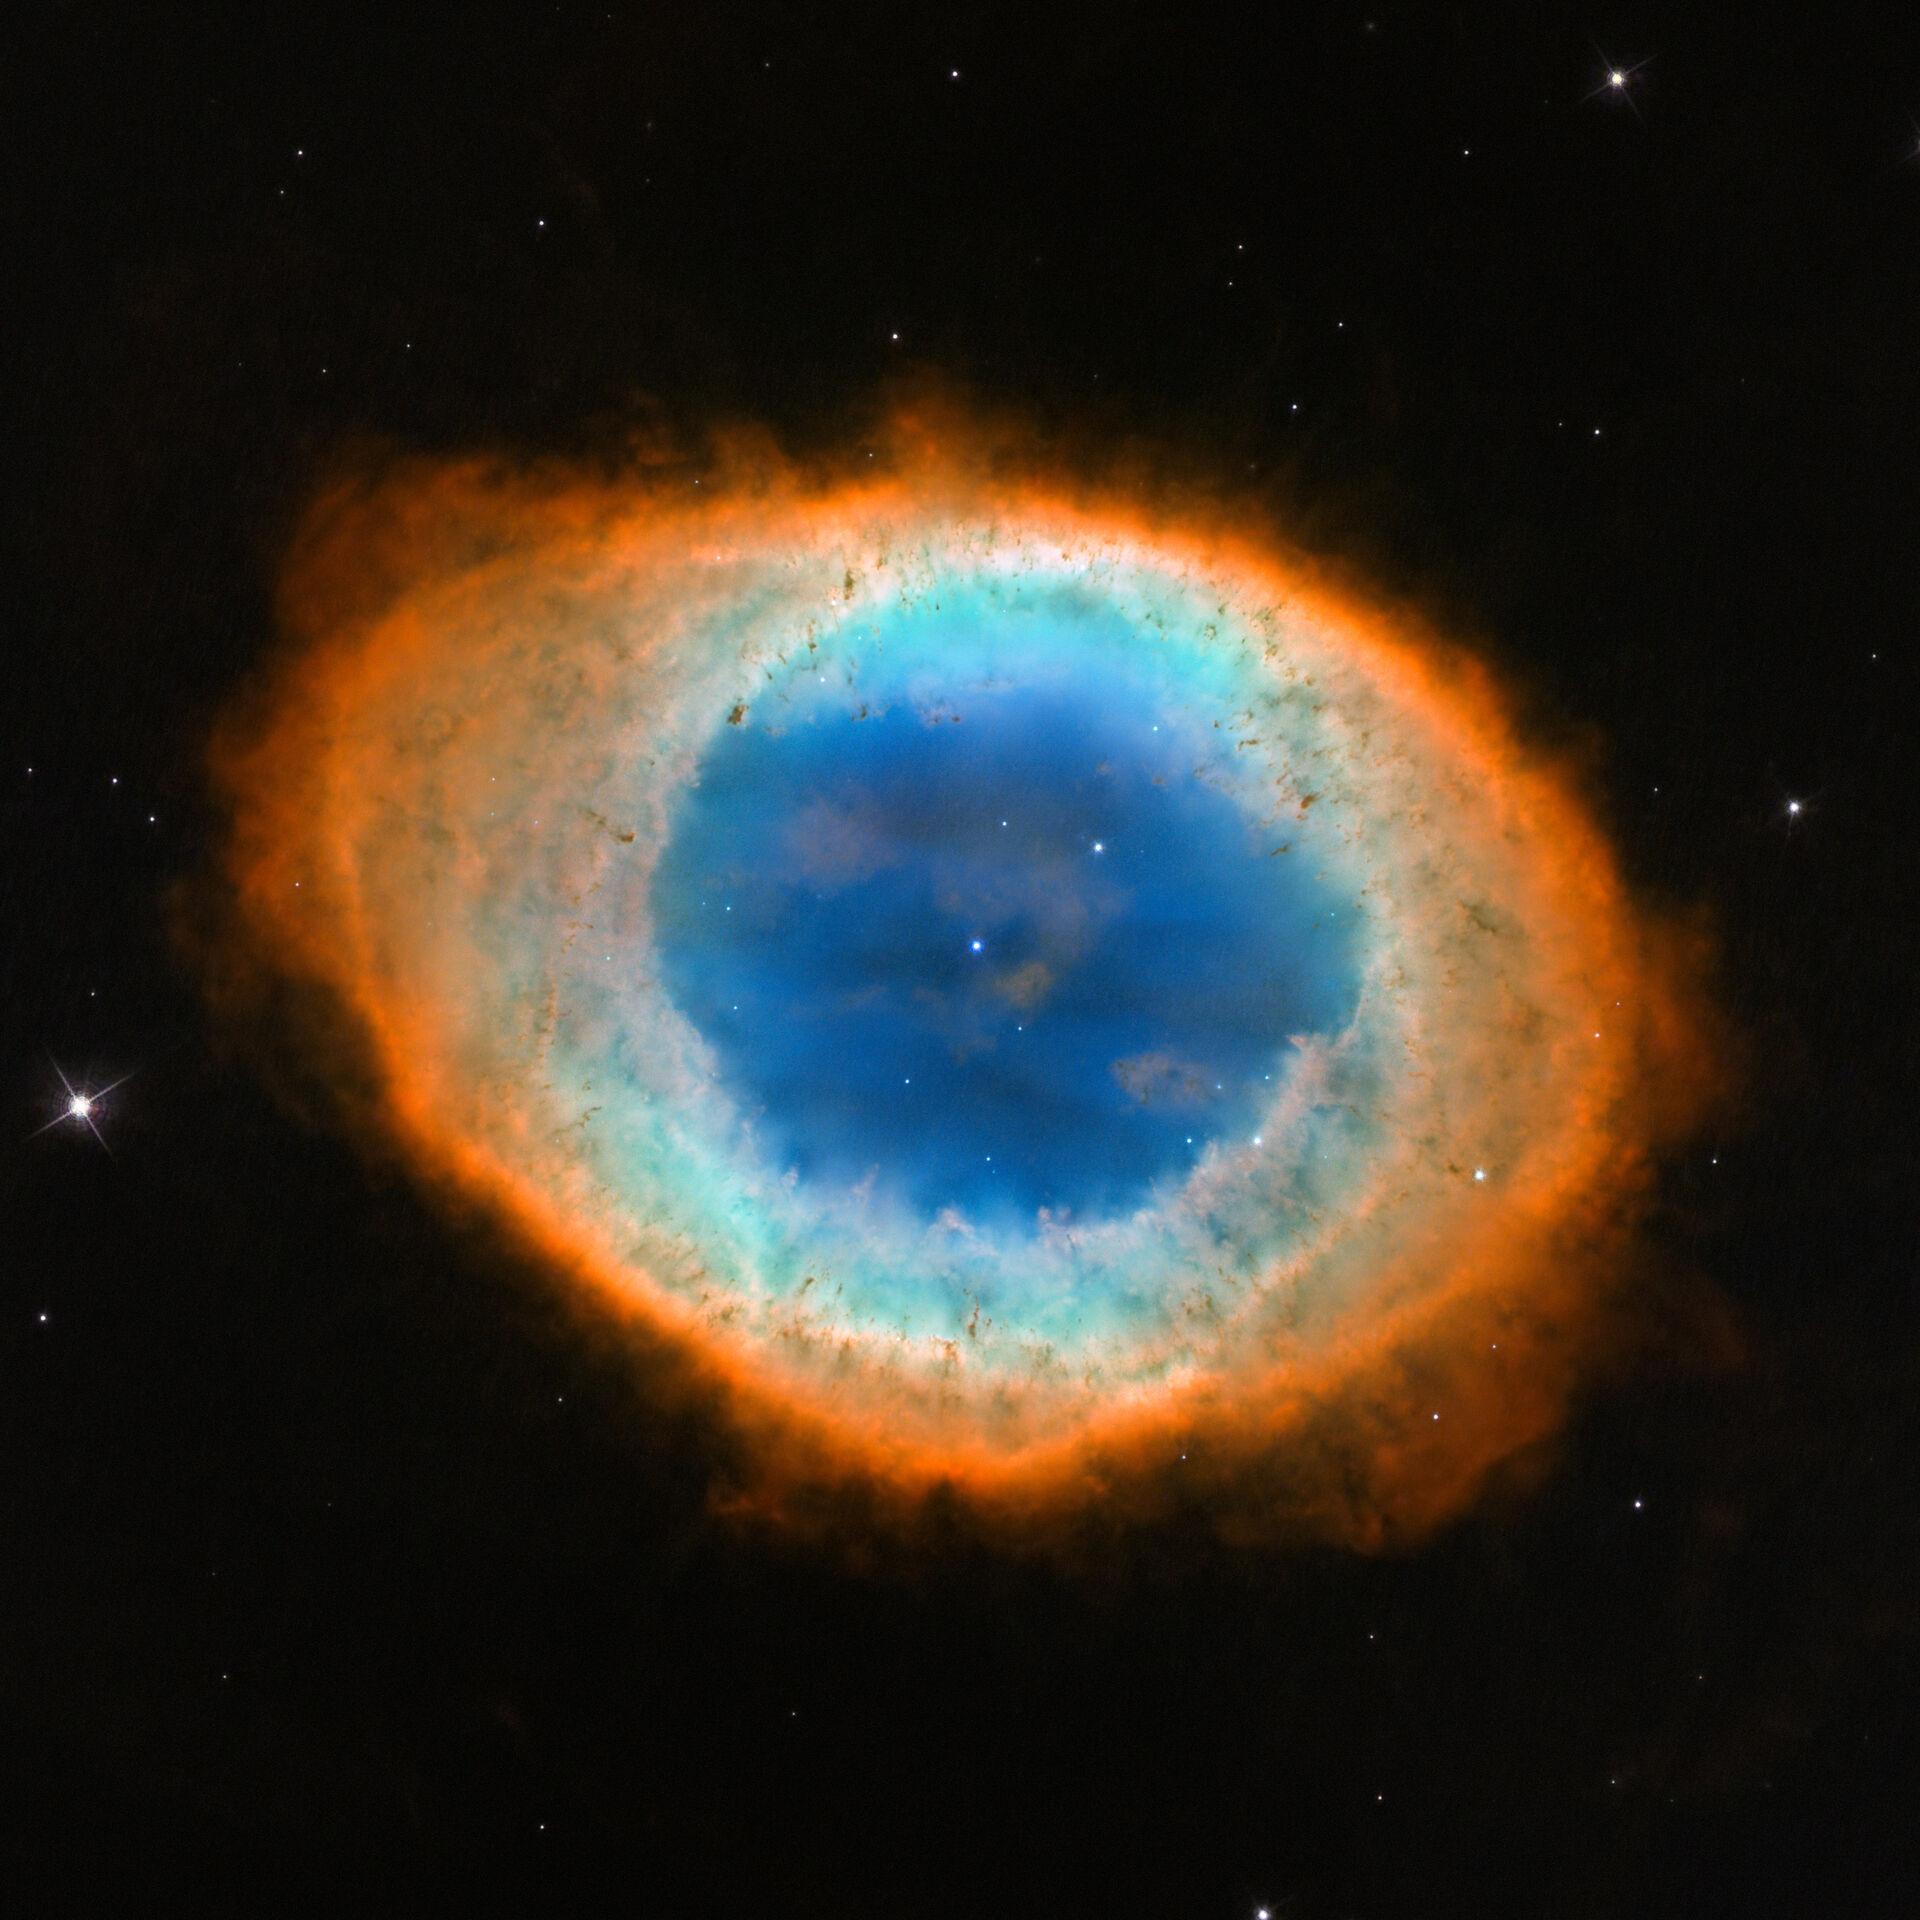 Image of the Ring Nebula, planetary nebula ring shaped.